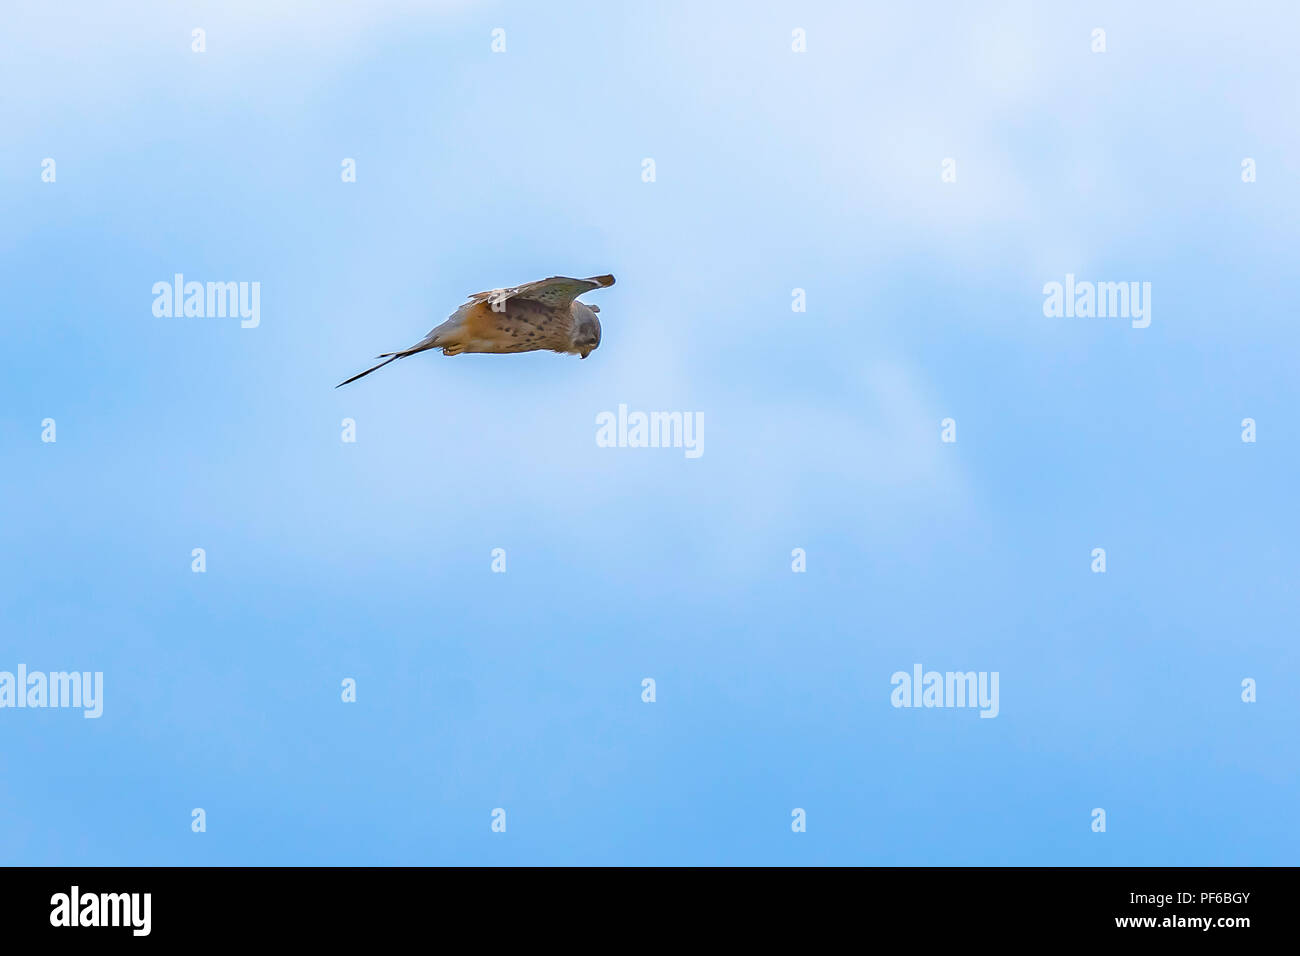 Jagd Greifvogel. Turmfalke (Falco tinnunculus) auf blauen Himmel Hintergrund. Wildlife Uk. Falcon Staubsauger in der Luft auf der Suche nach Beute. Tier in freier Wildbahn. Stockfoto